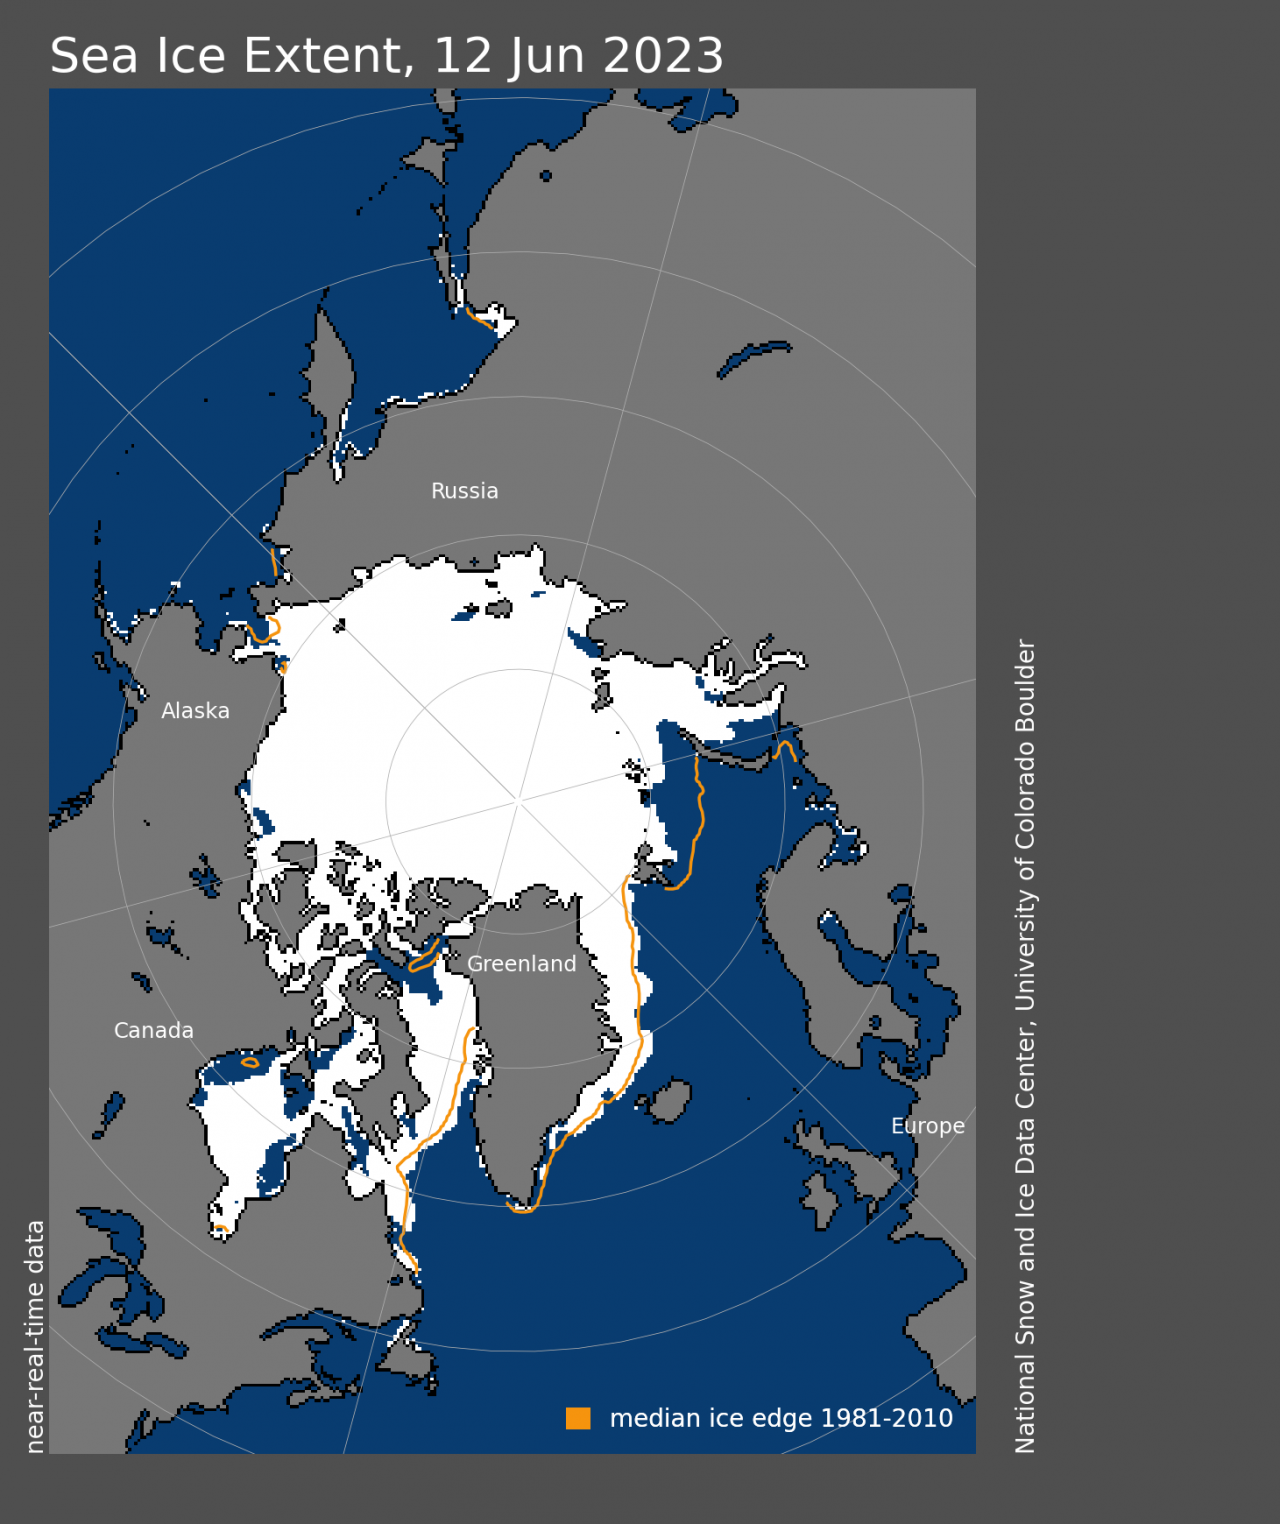 L'estensione dei ghiacci artici confrontata con la media (linea arancione). Fonte NSIDC)